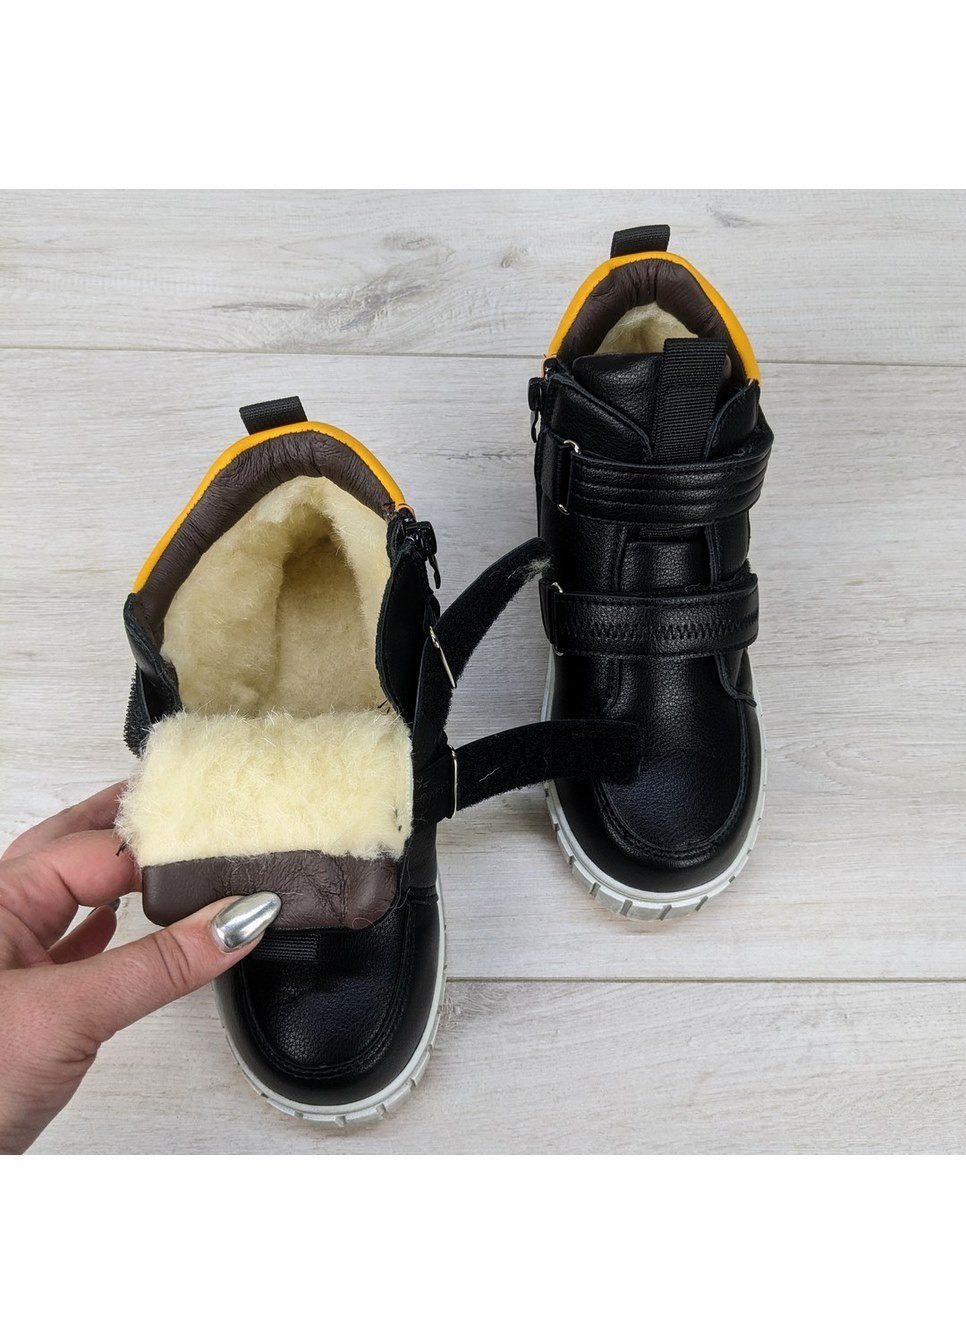 Черные повседневные зимние ботинки зимние для мальчика Bessky